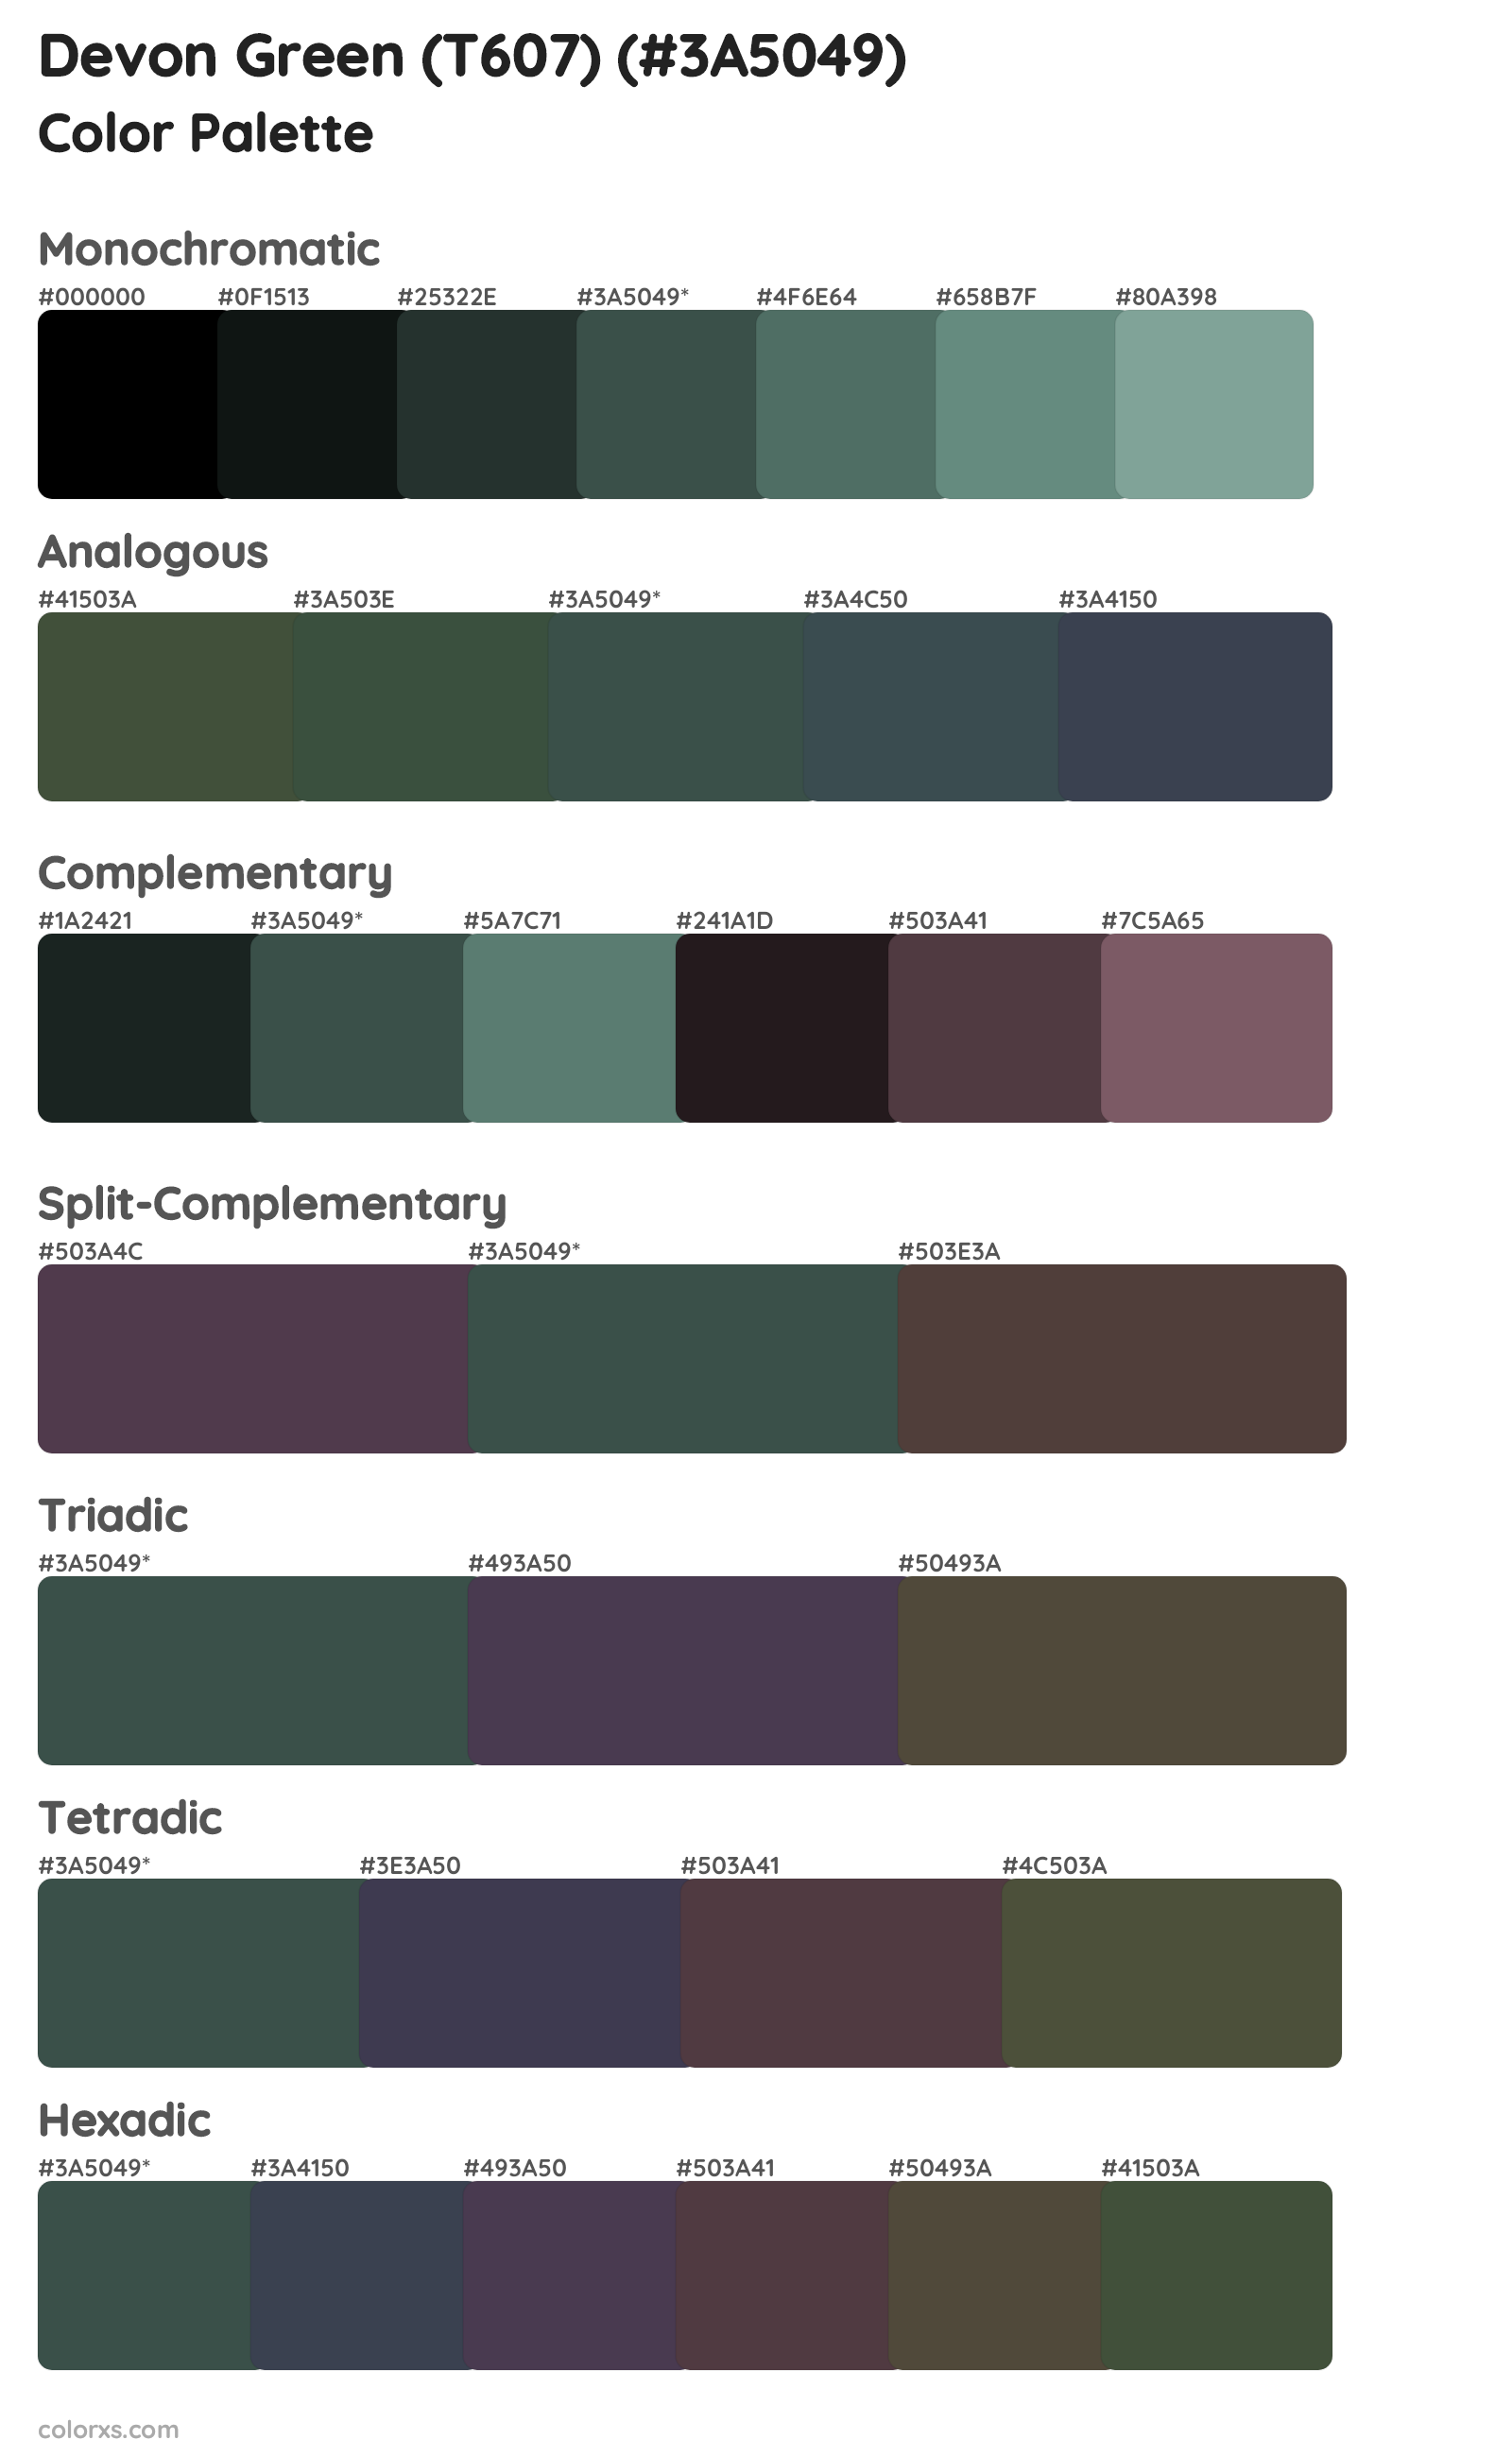 Devon Green (T607) Color Scheme Palettes